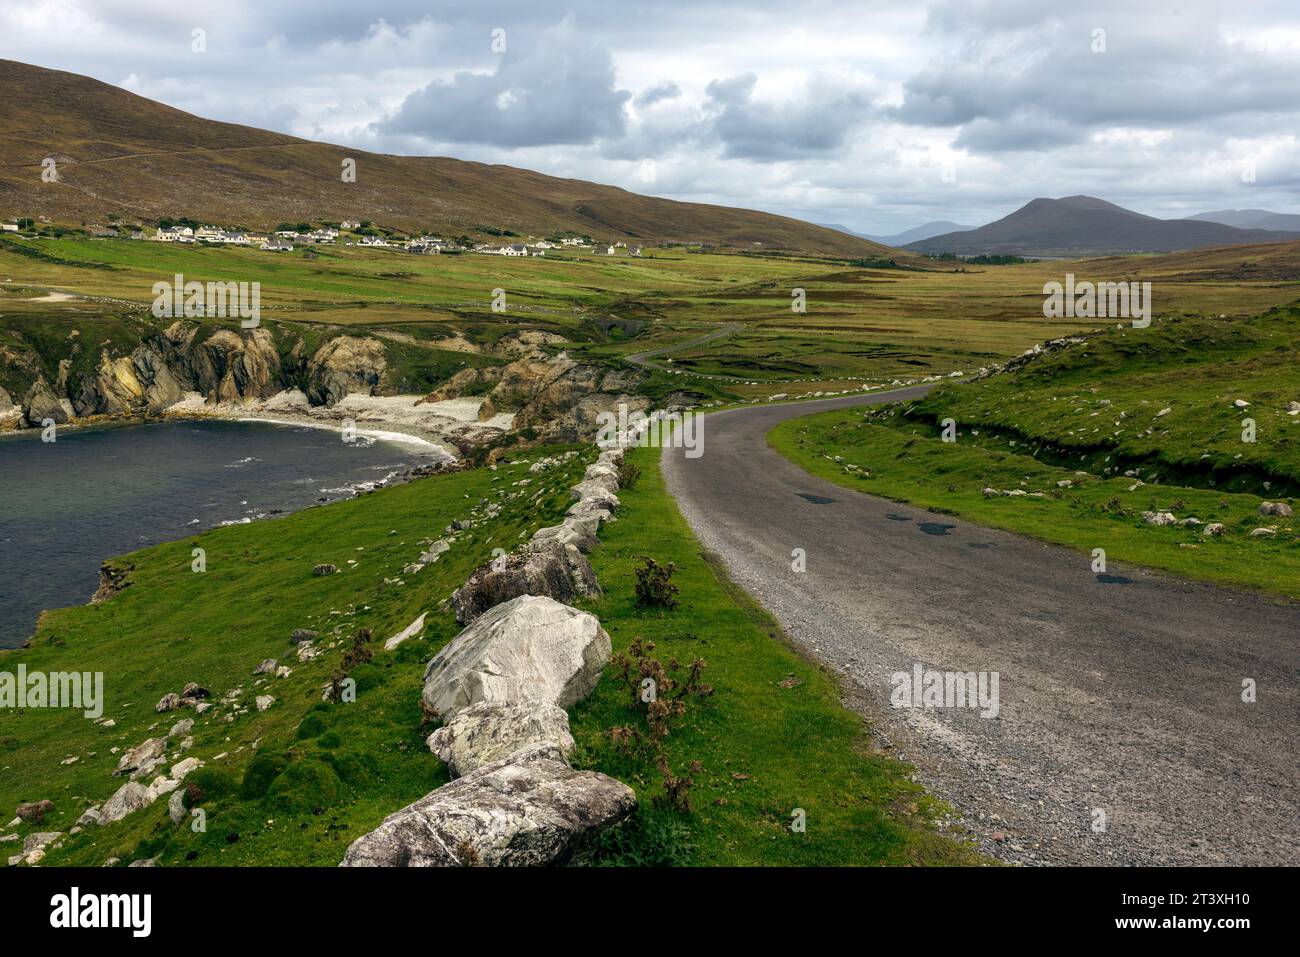 Die White Cliffs of Ashleam auf Achill Island im County Mayo, Irland, sind ein muss für jeden Besucher des Wild Atlantic Way. Diese überragenden Stockfoto